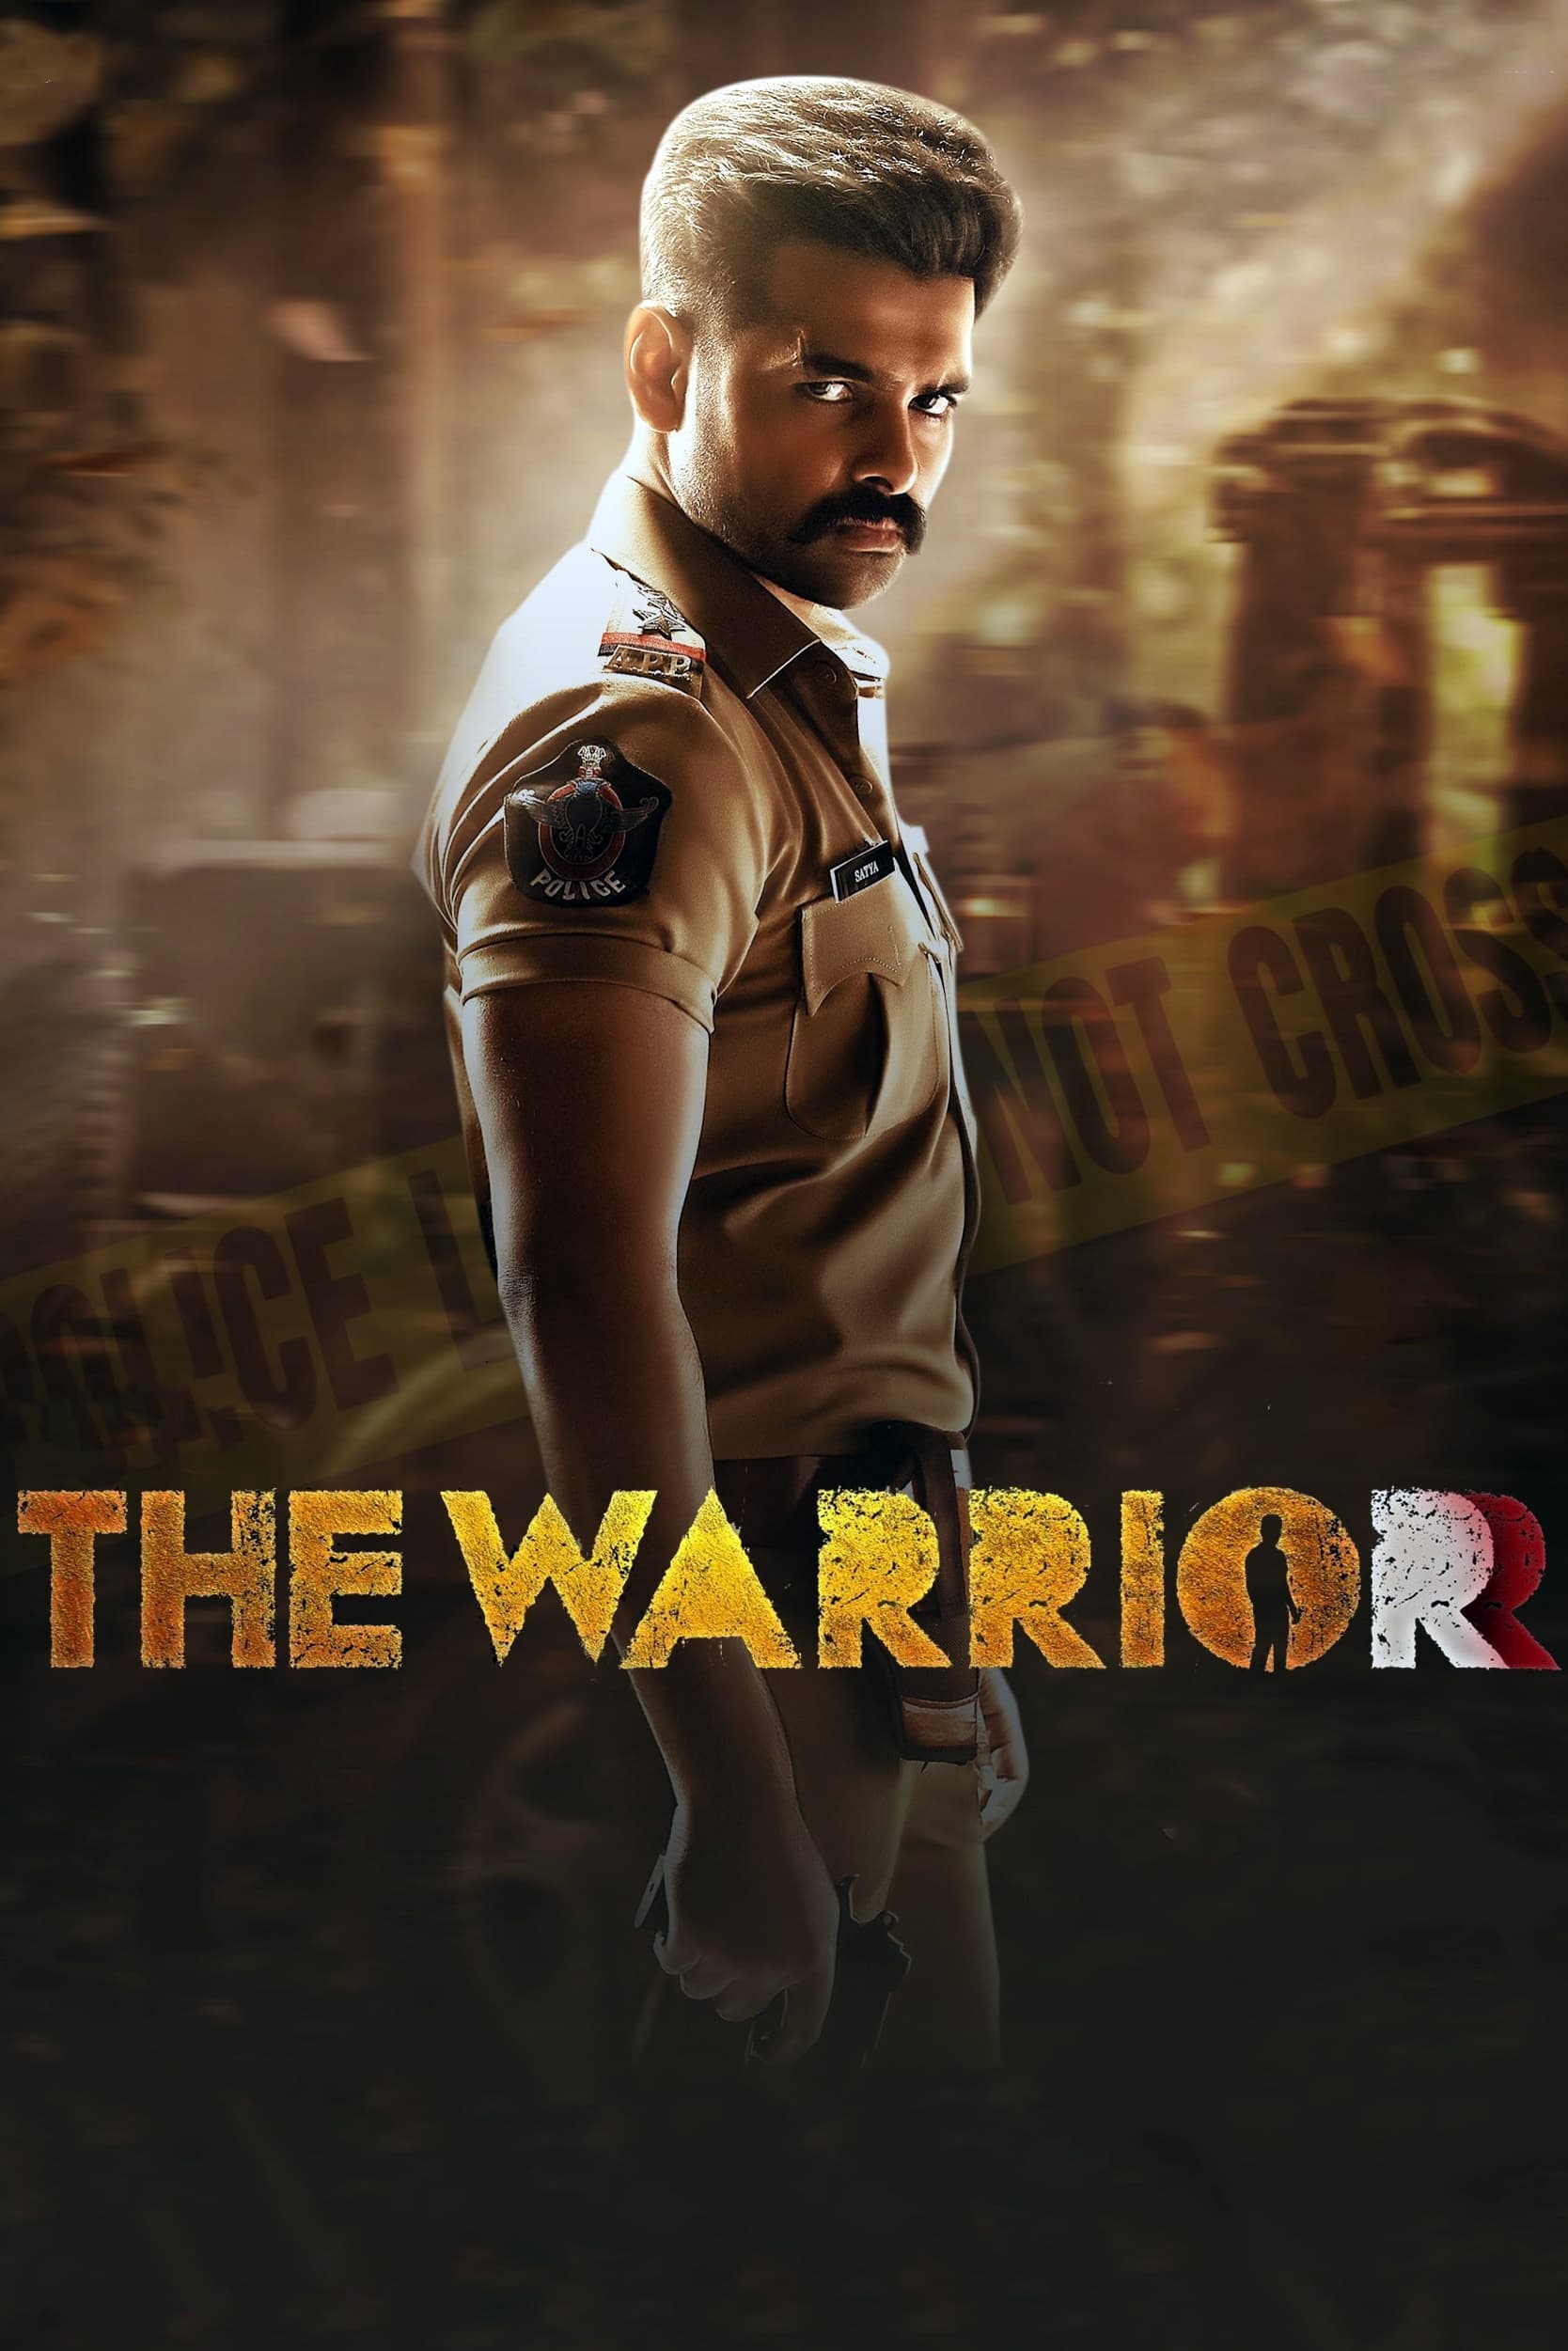 The Warriorr (2022) Telugu WEB-DL 1080p 720p & 480p x264 DD5.1 |Full Movie